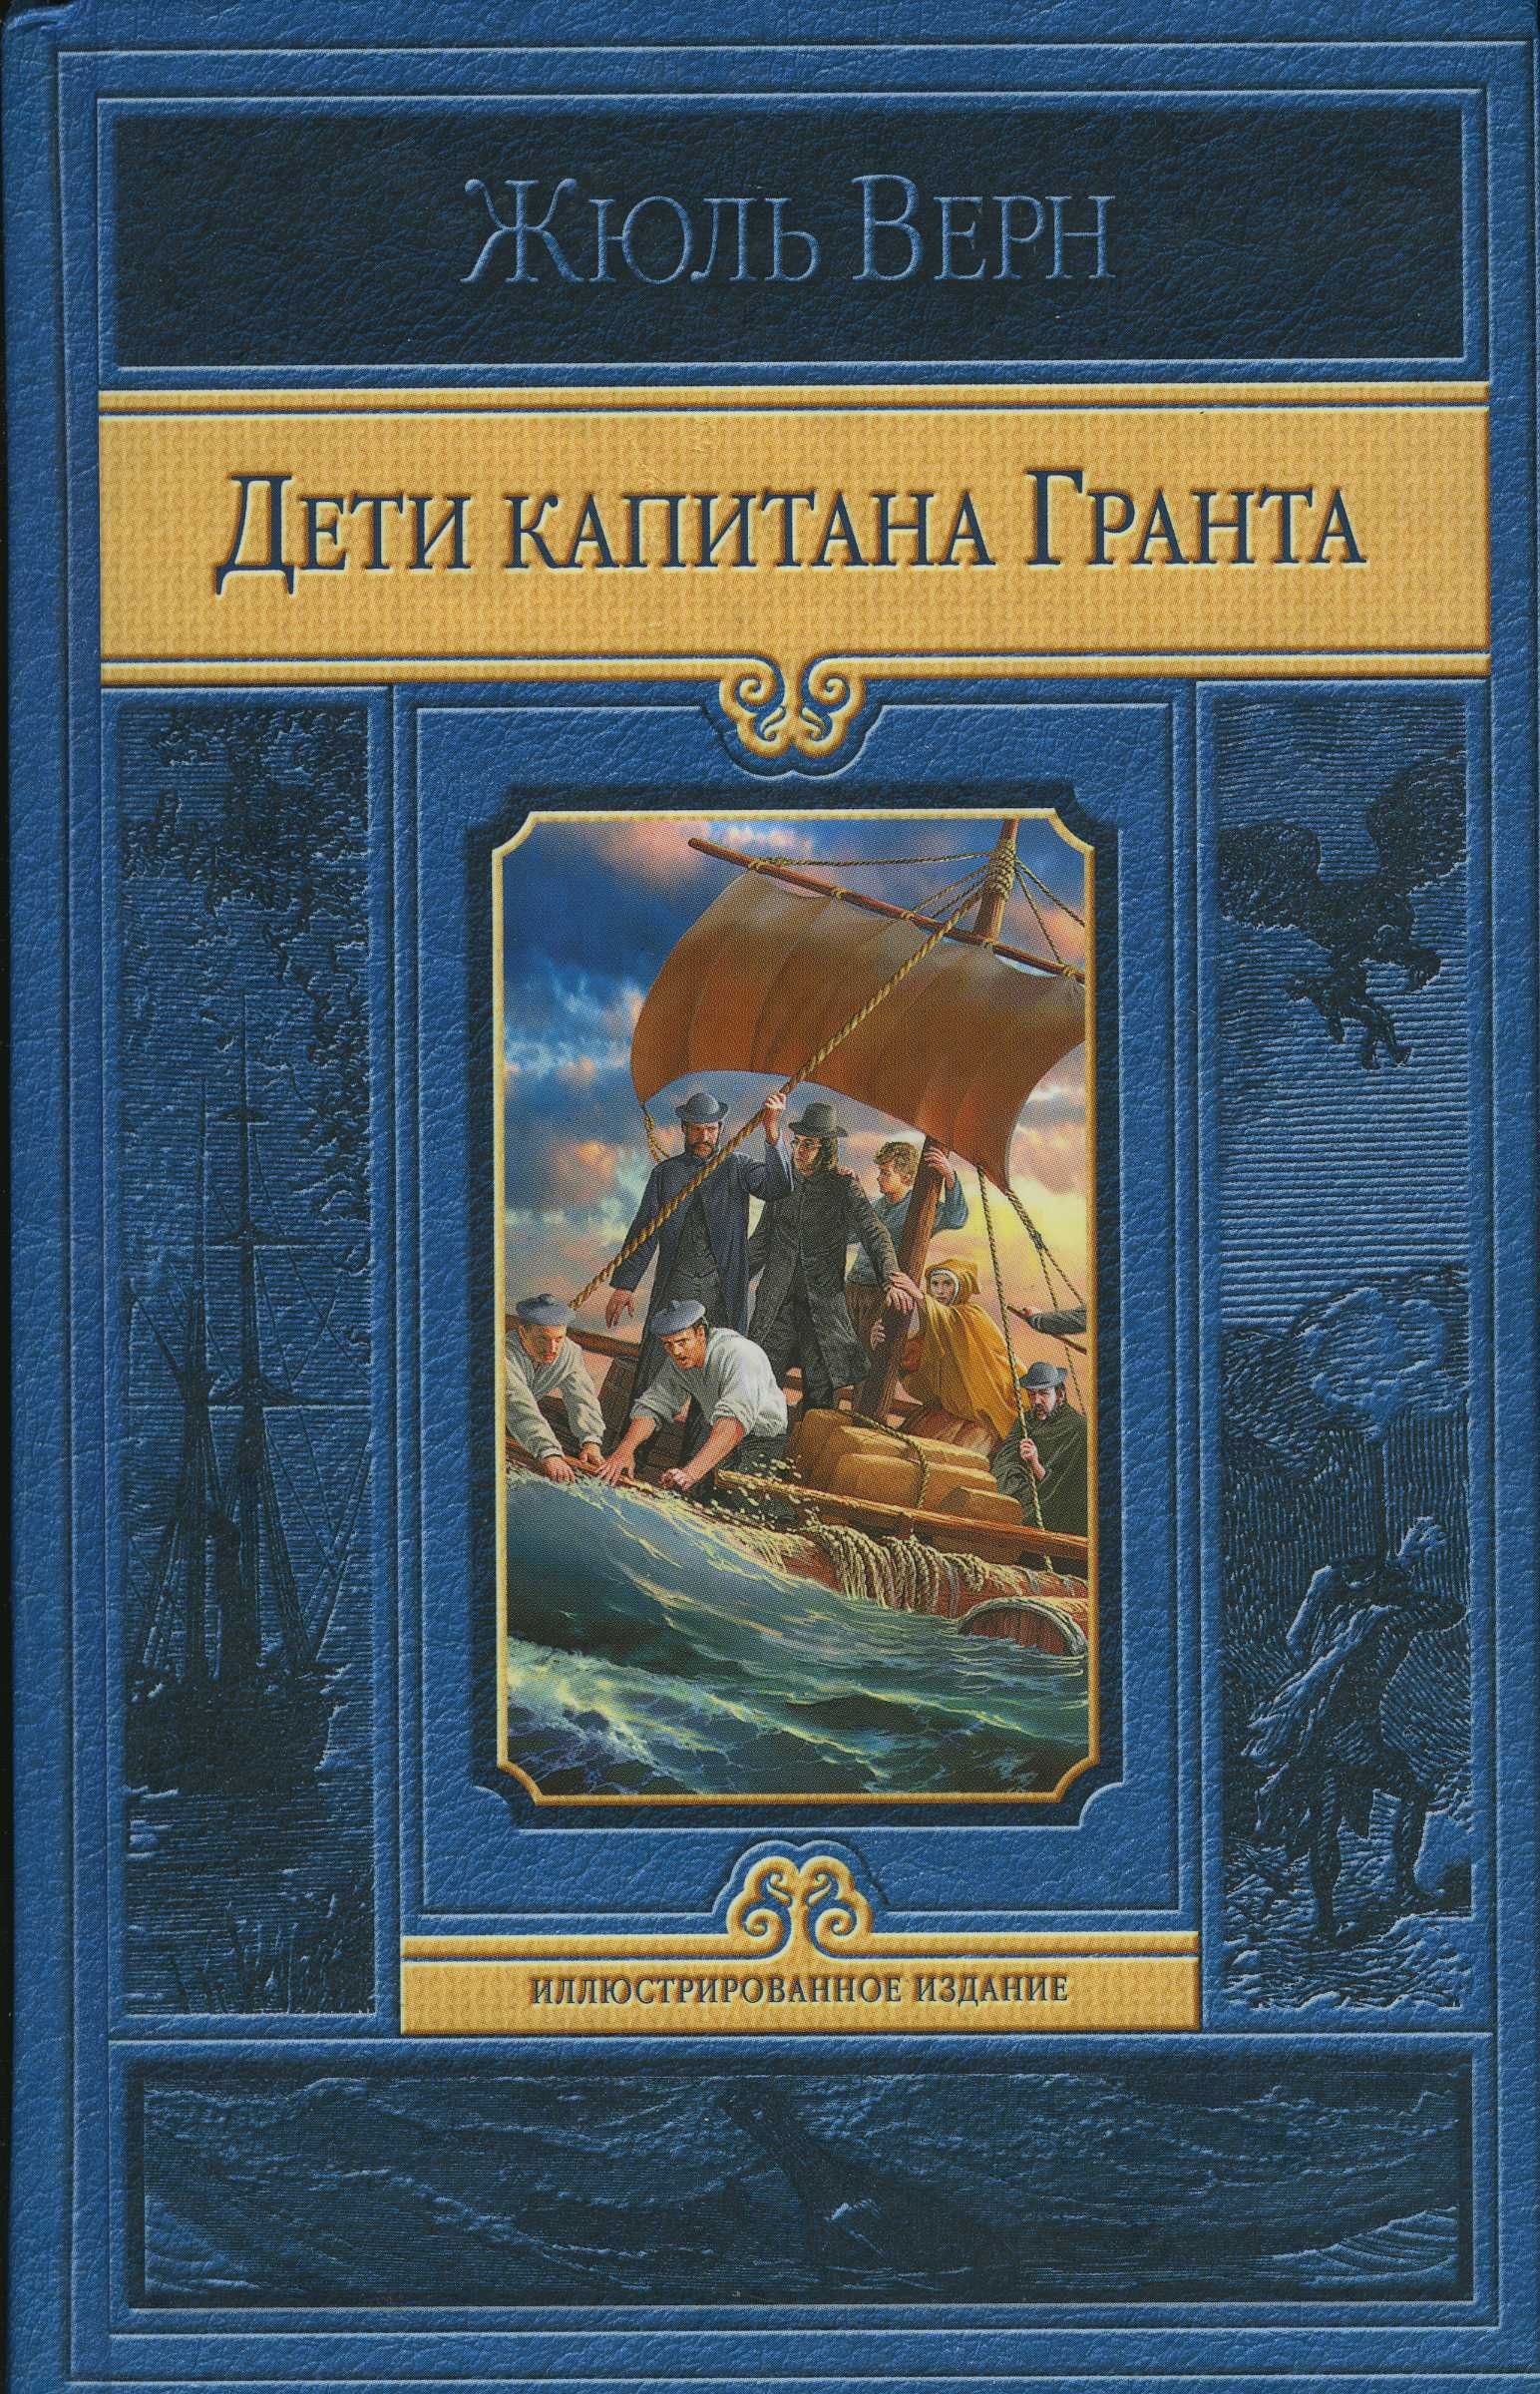 Альфа книга Жюль Верн дети